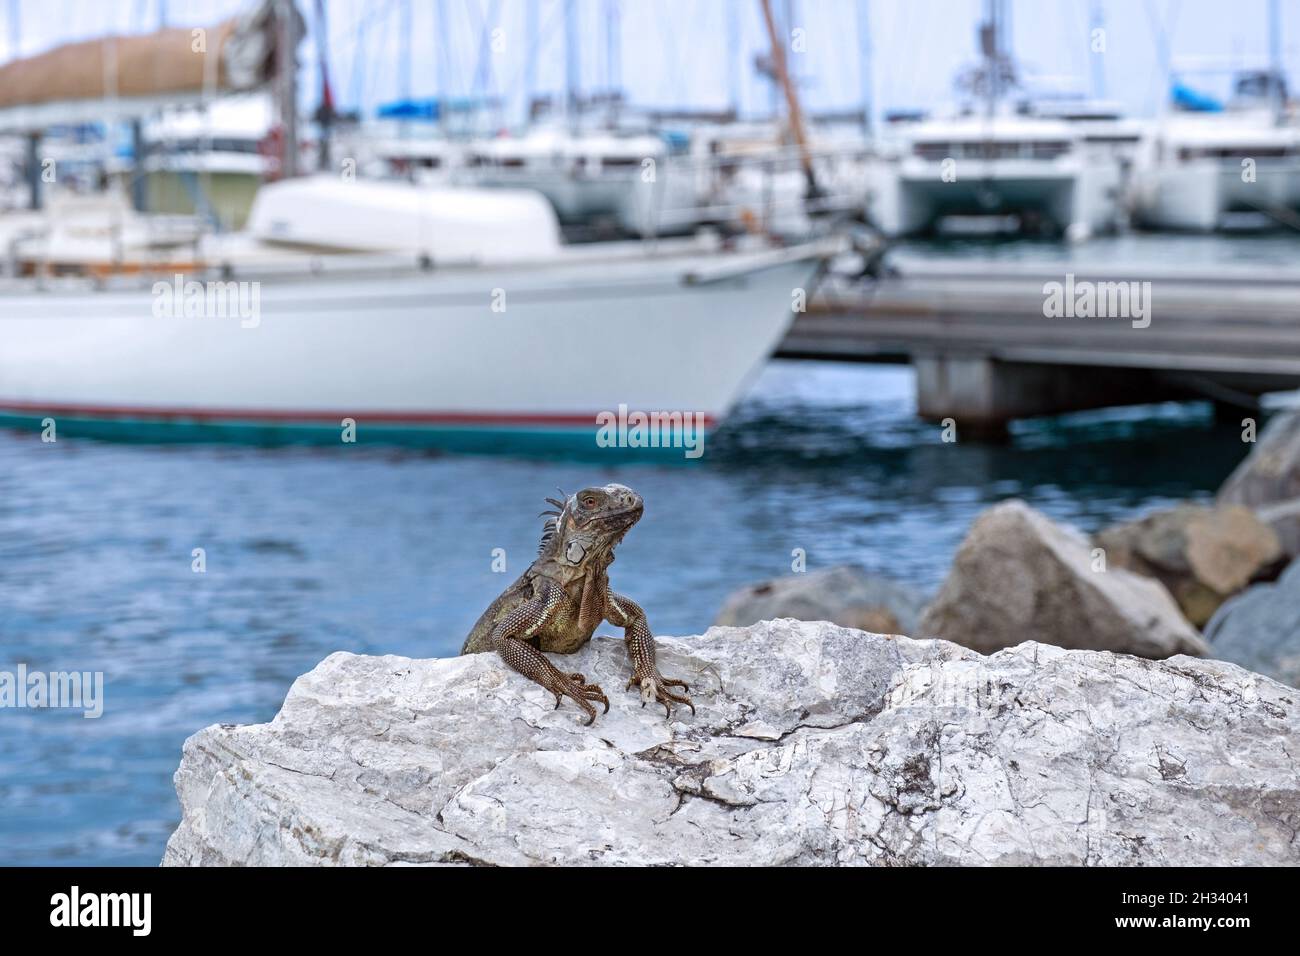 Iguana vert commun / iguana américain à la marina / port de Marigot, ville captitale de la partie française de l'île de Saint Martin dans la mer des Caraïbes Banque D'Images